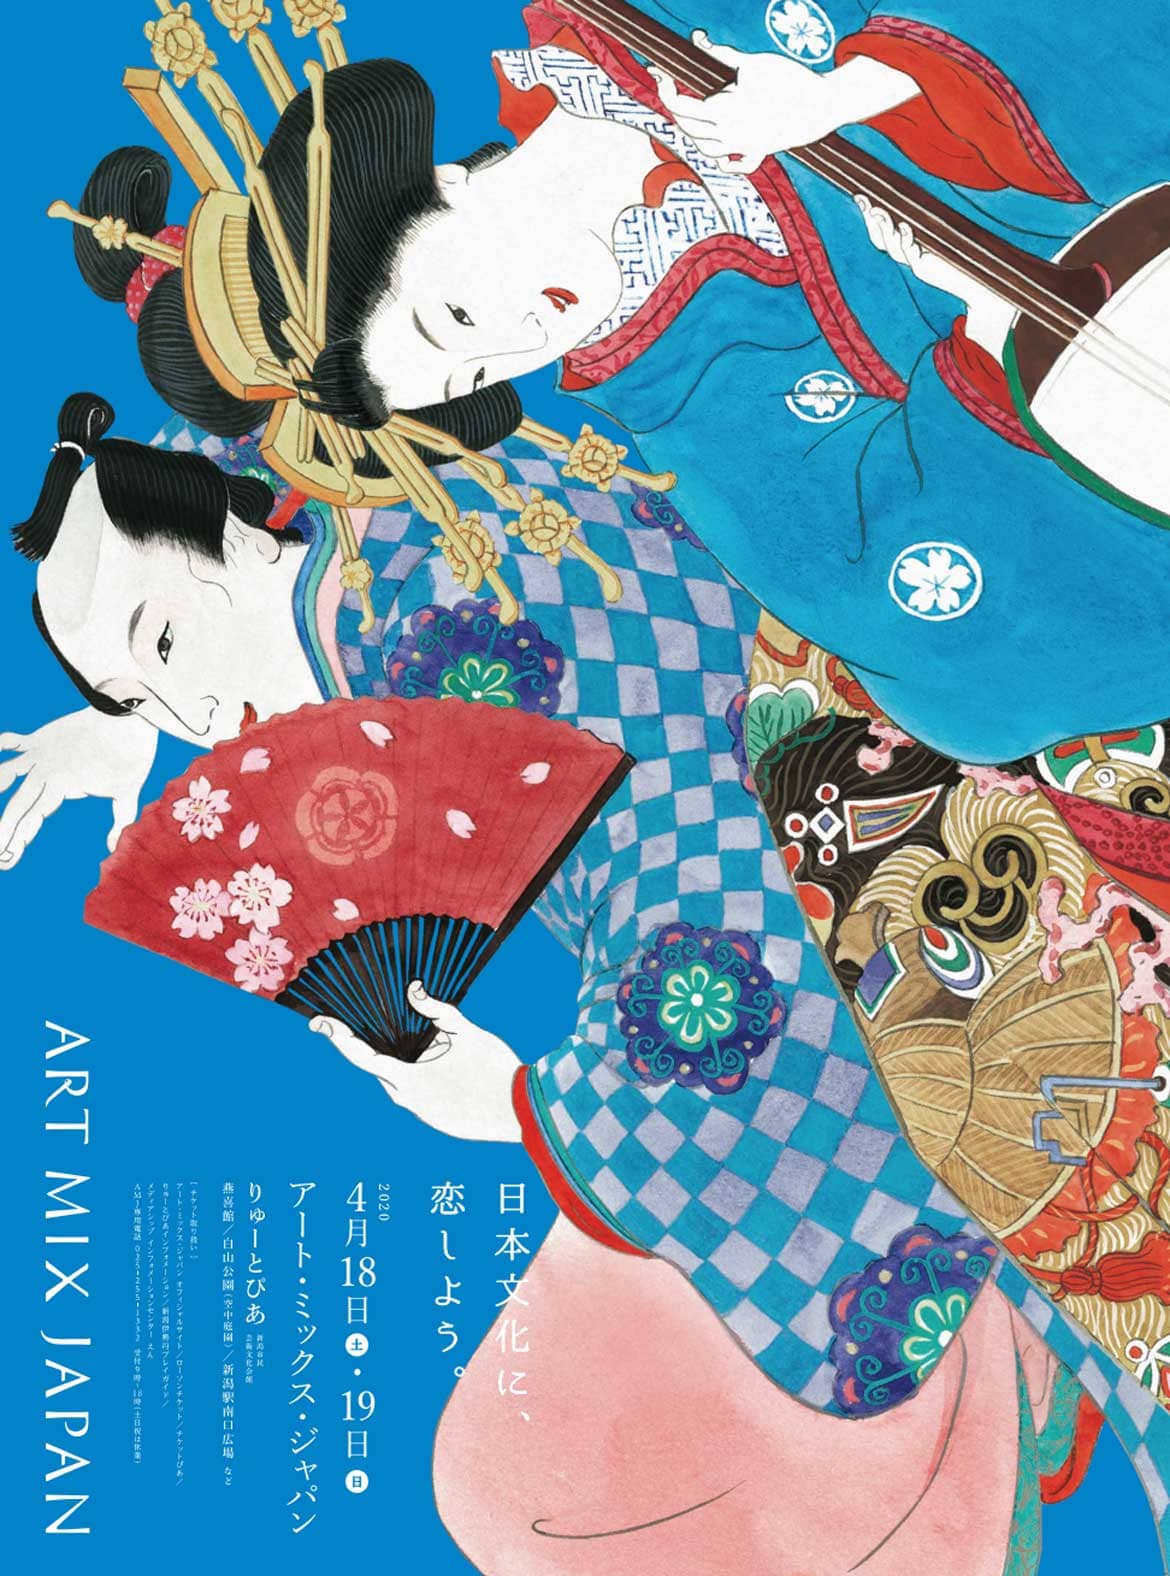 多彩な日本文化をまるごと楽しむ和の祭典 「アート・ミックス・ジャパン2020」新潟にて4/18・19開催!